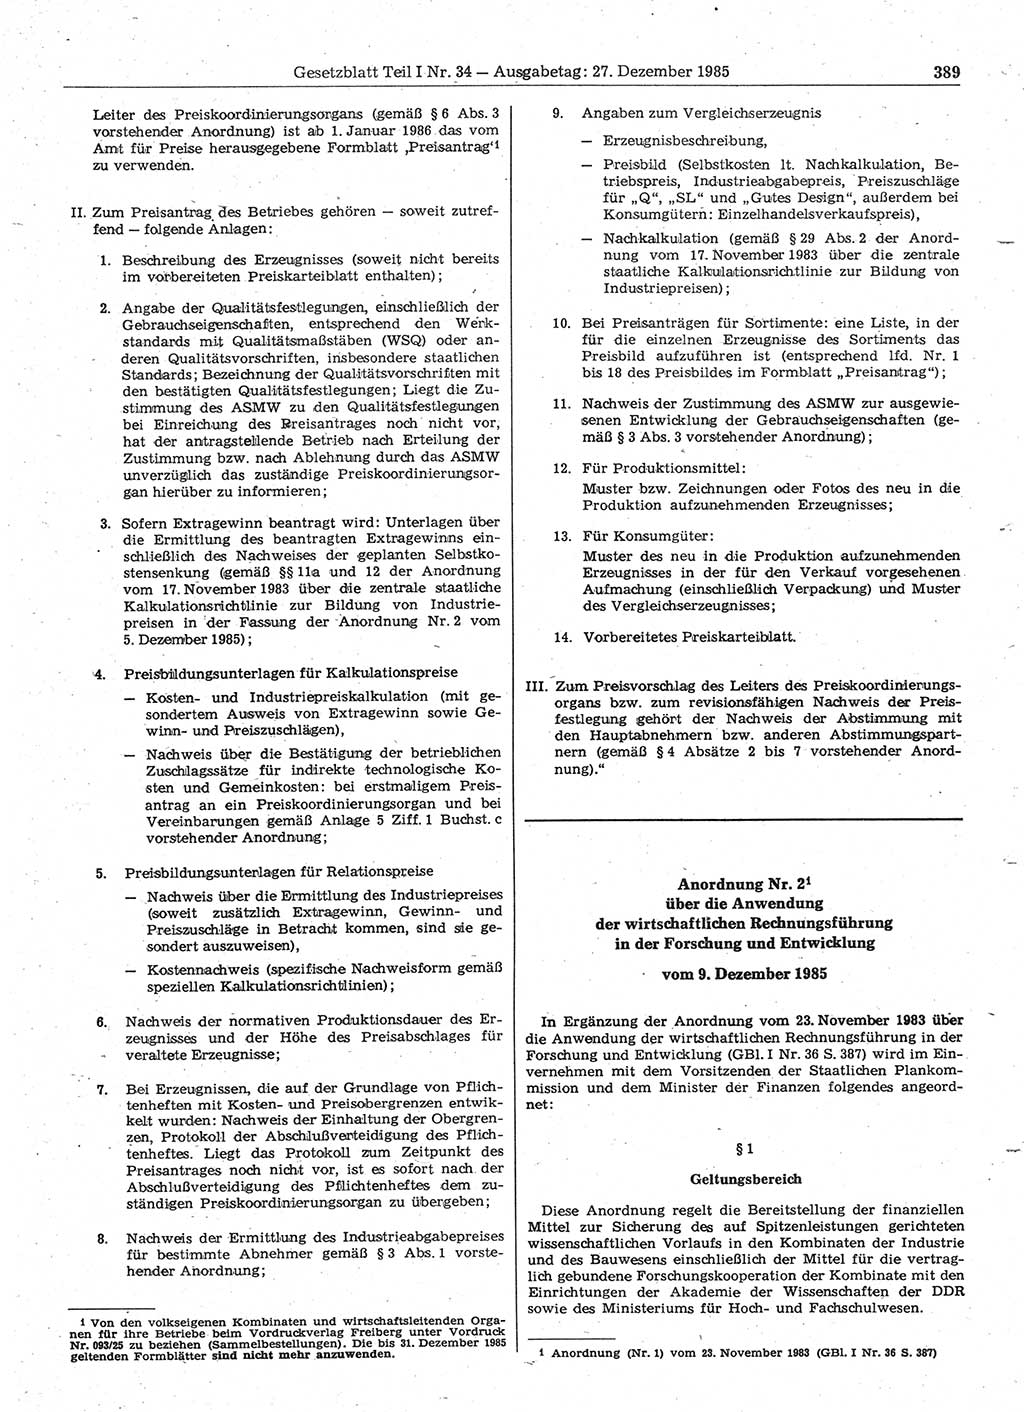 Gesetzblatt (GBl.) der Deutschen Demokratischen Republik (DDR) Teil Ⅰ 1985, Seite 389 (GBl. DDR Ⅰ 1985, S. 389)